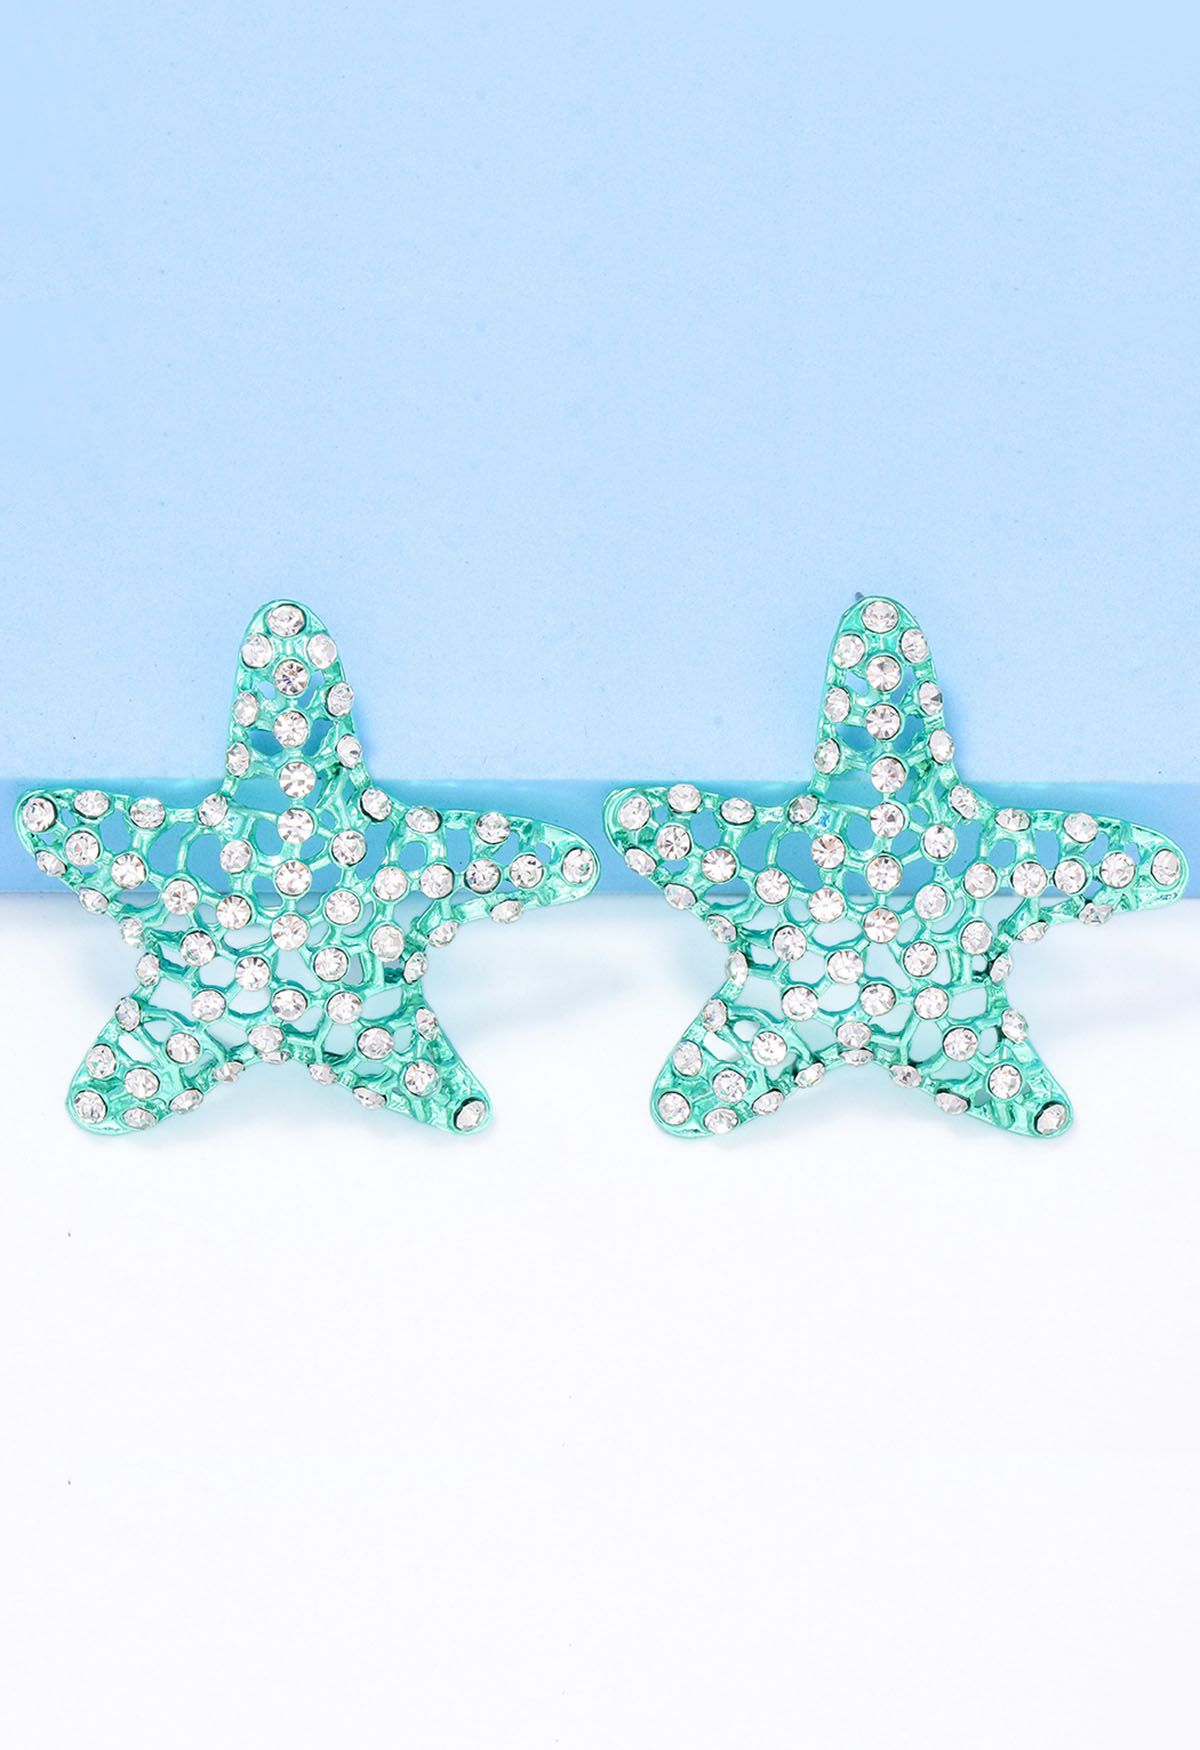 Starfish Hollow Out Zircon Earrings in Mint